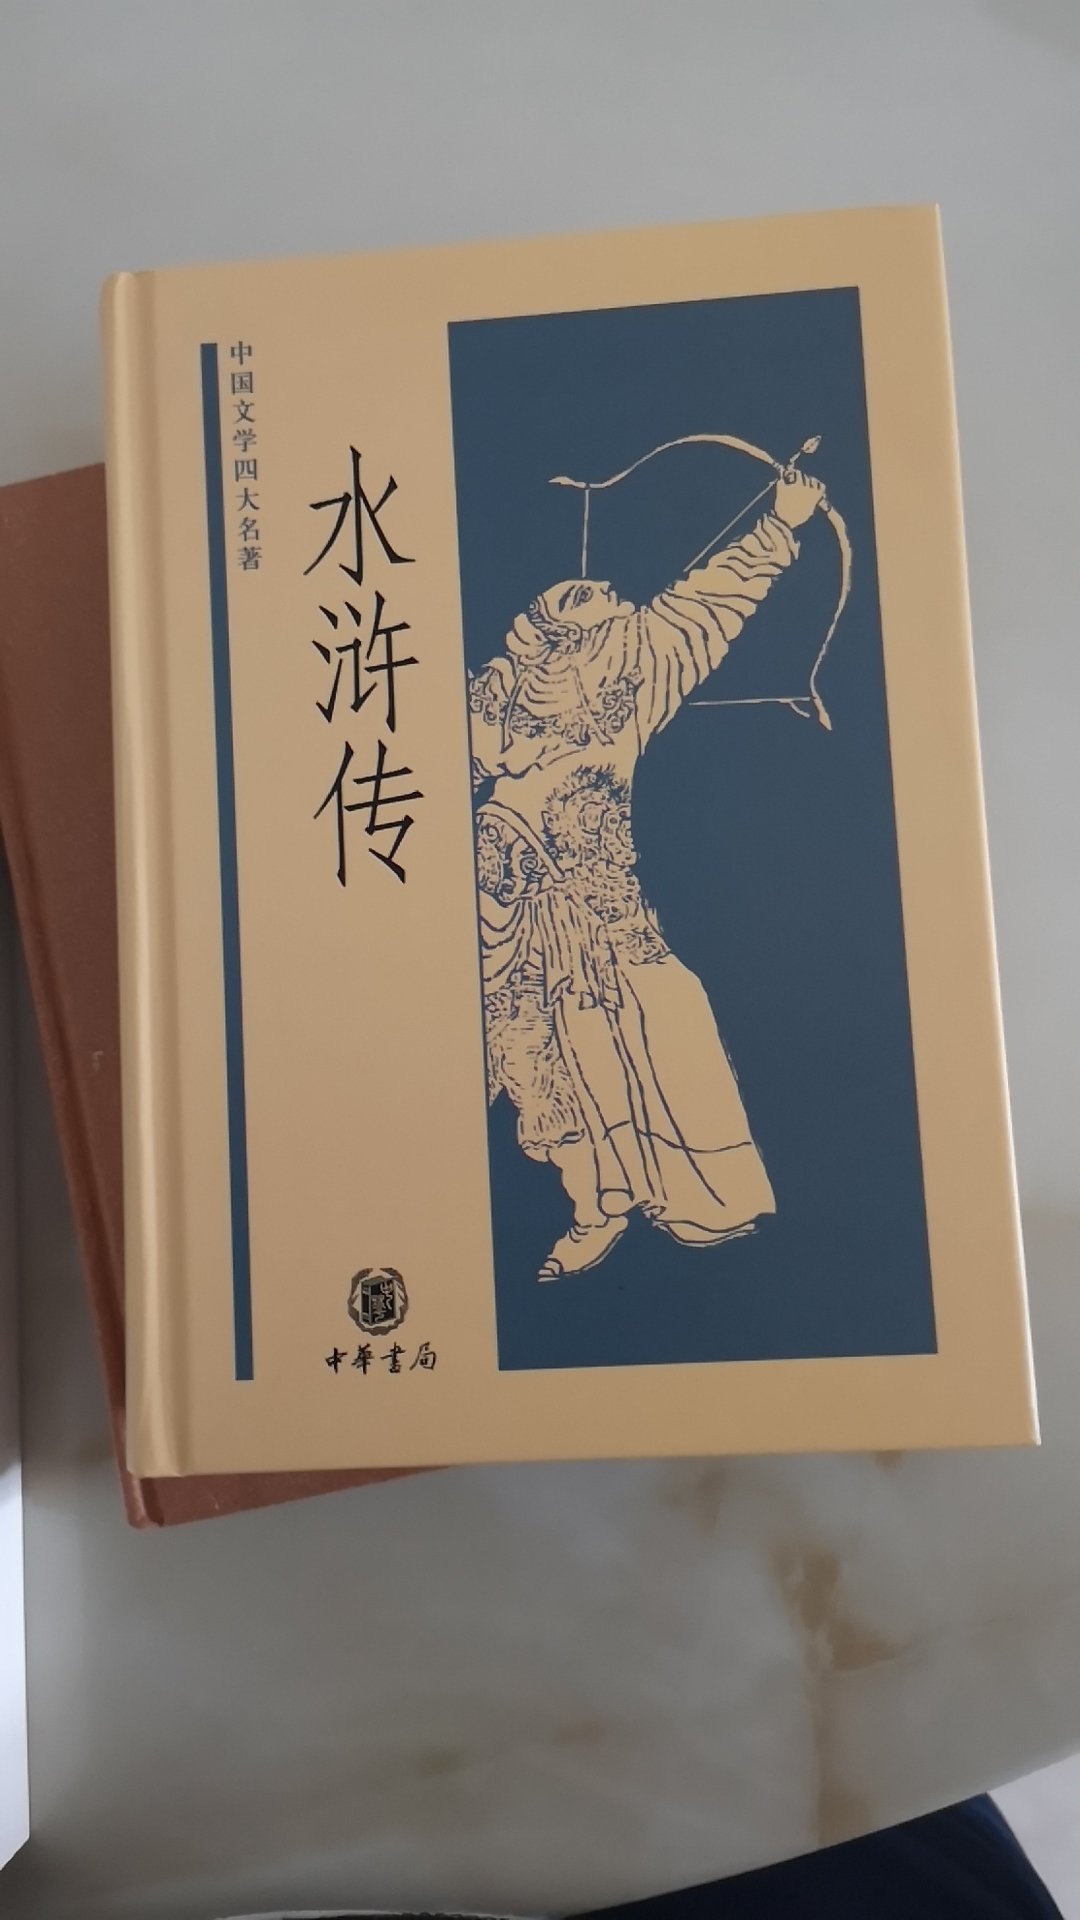 中华书局的书有古典味道不错